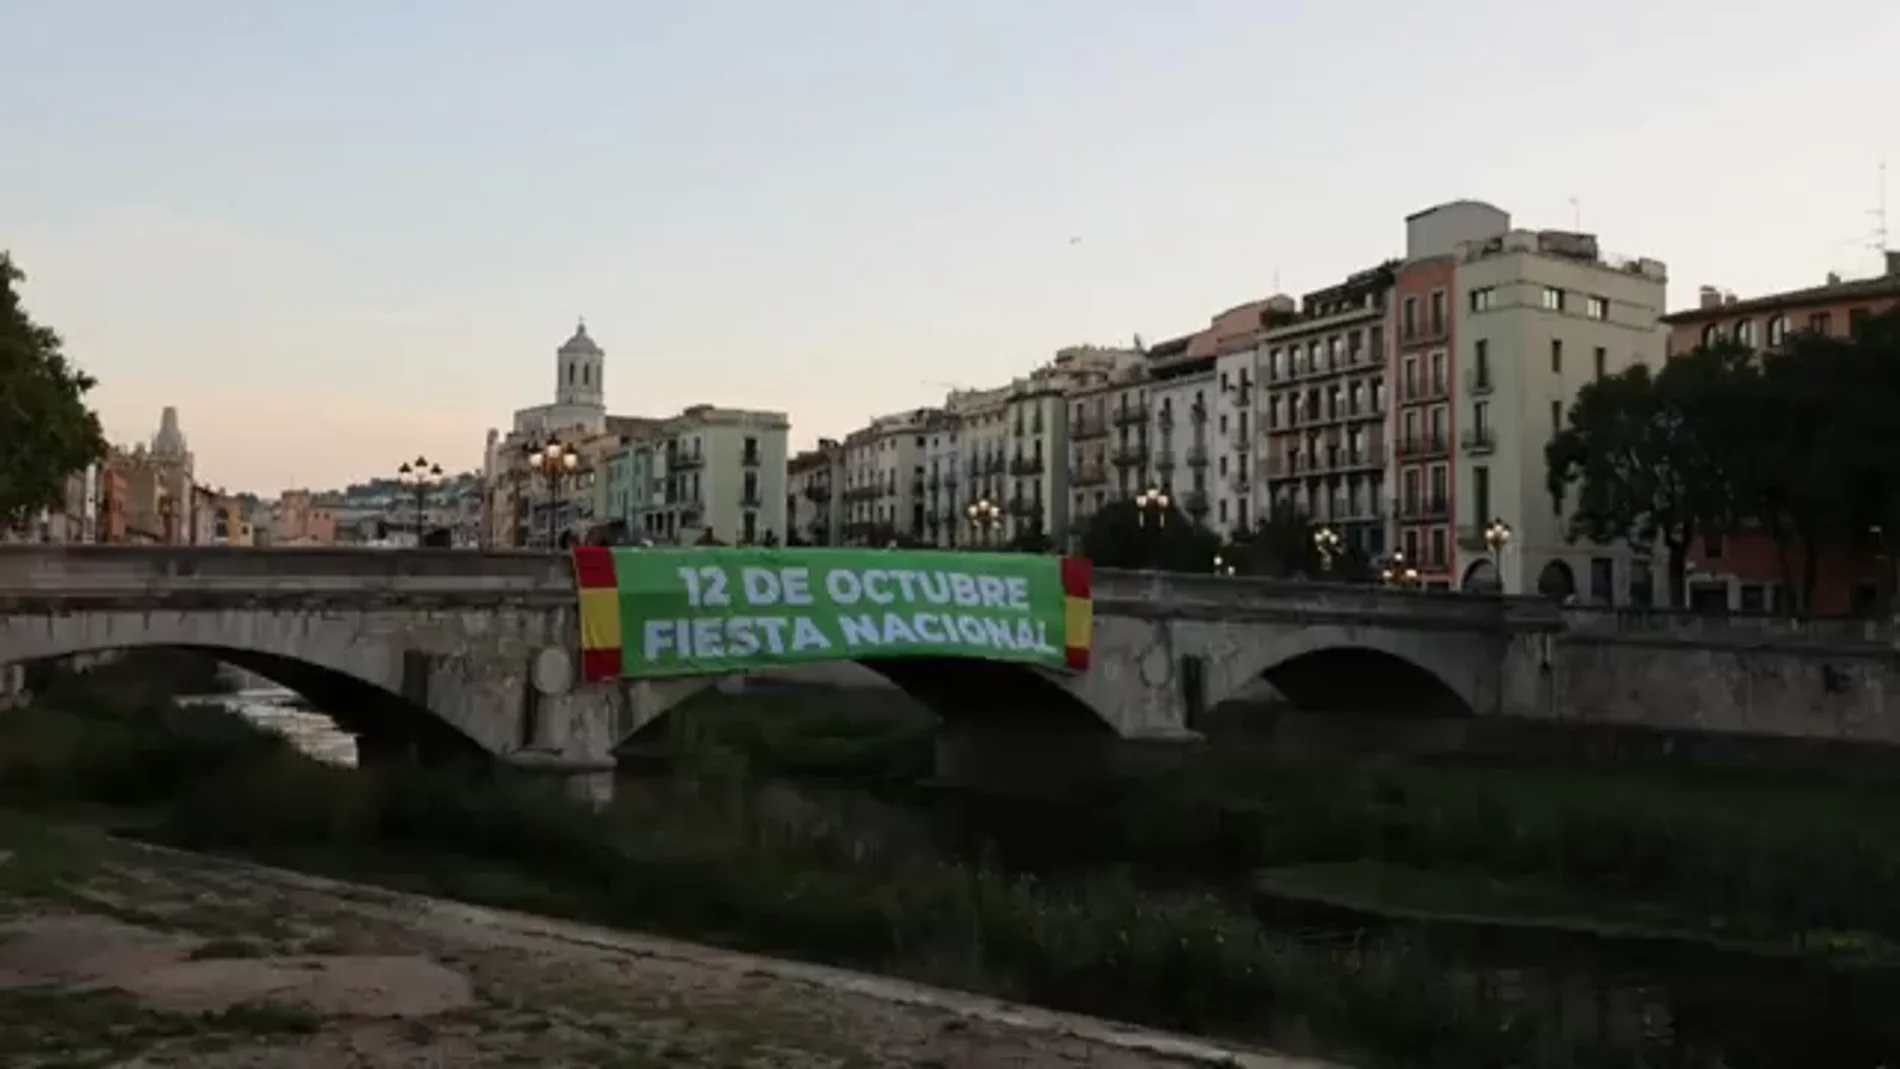 Vox despliega en un puente de Girona una pancarta de grandes dimensiones para reivindicar el 12 de Octubre